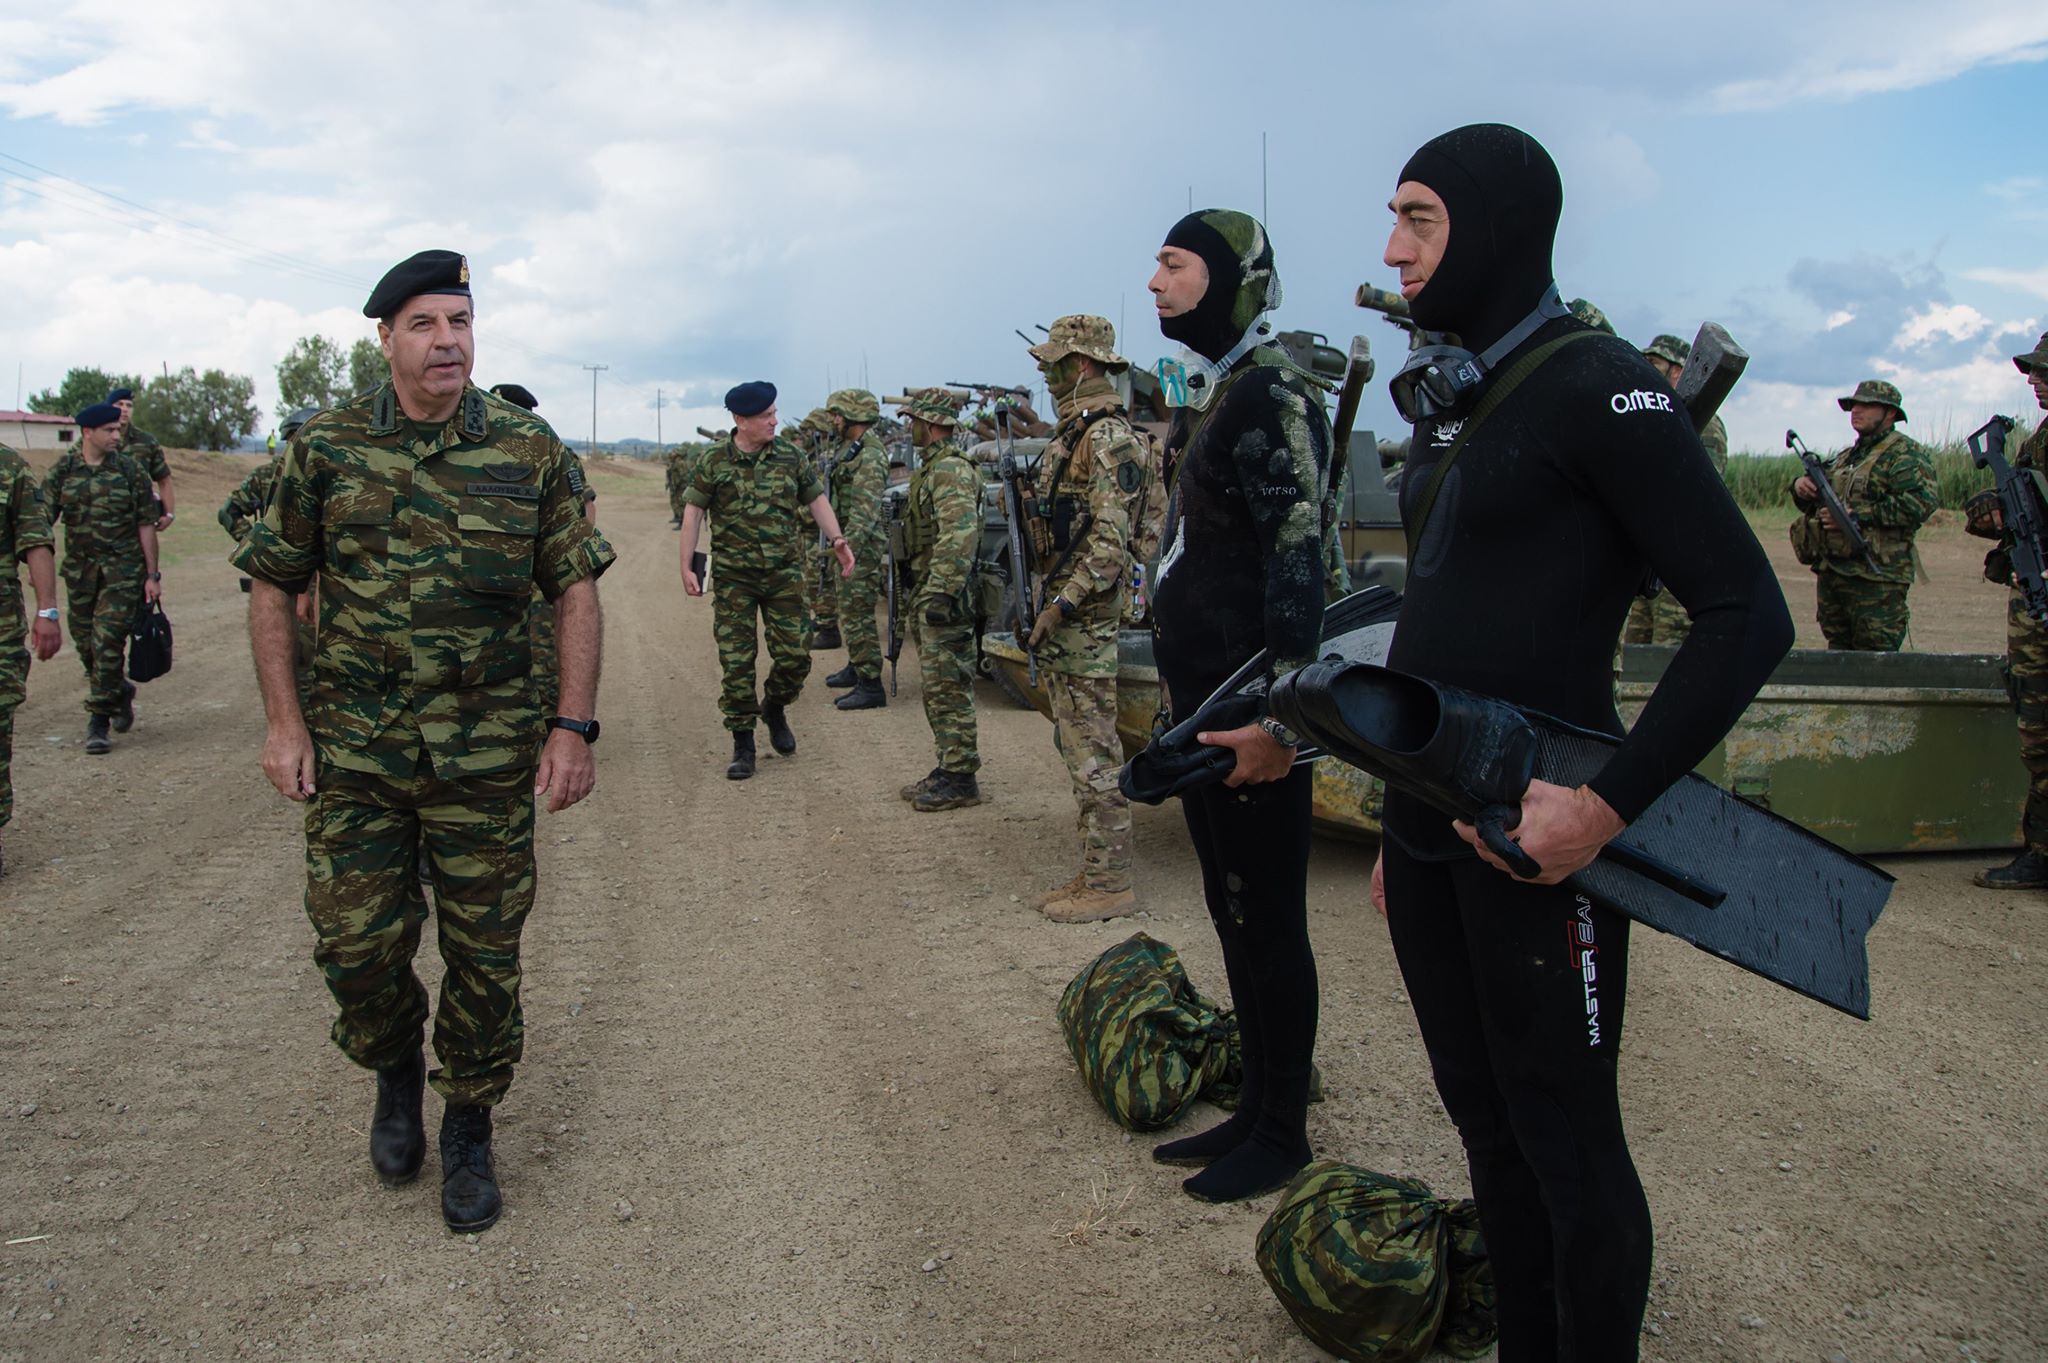 Εντυπωσιακές εικόνες από στρατιωτική άσκηση στον Έβρο υπό το βλέμμα του Αρχηγού ΓΕΣ